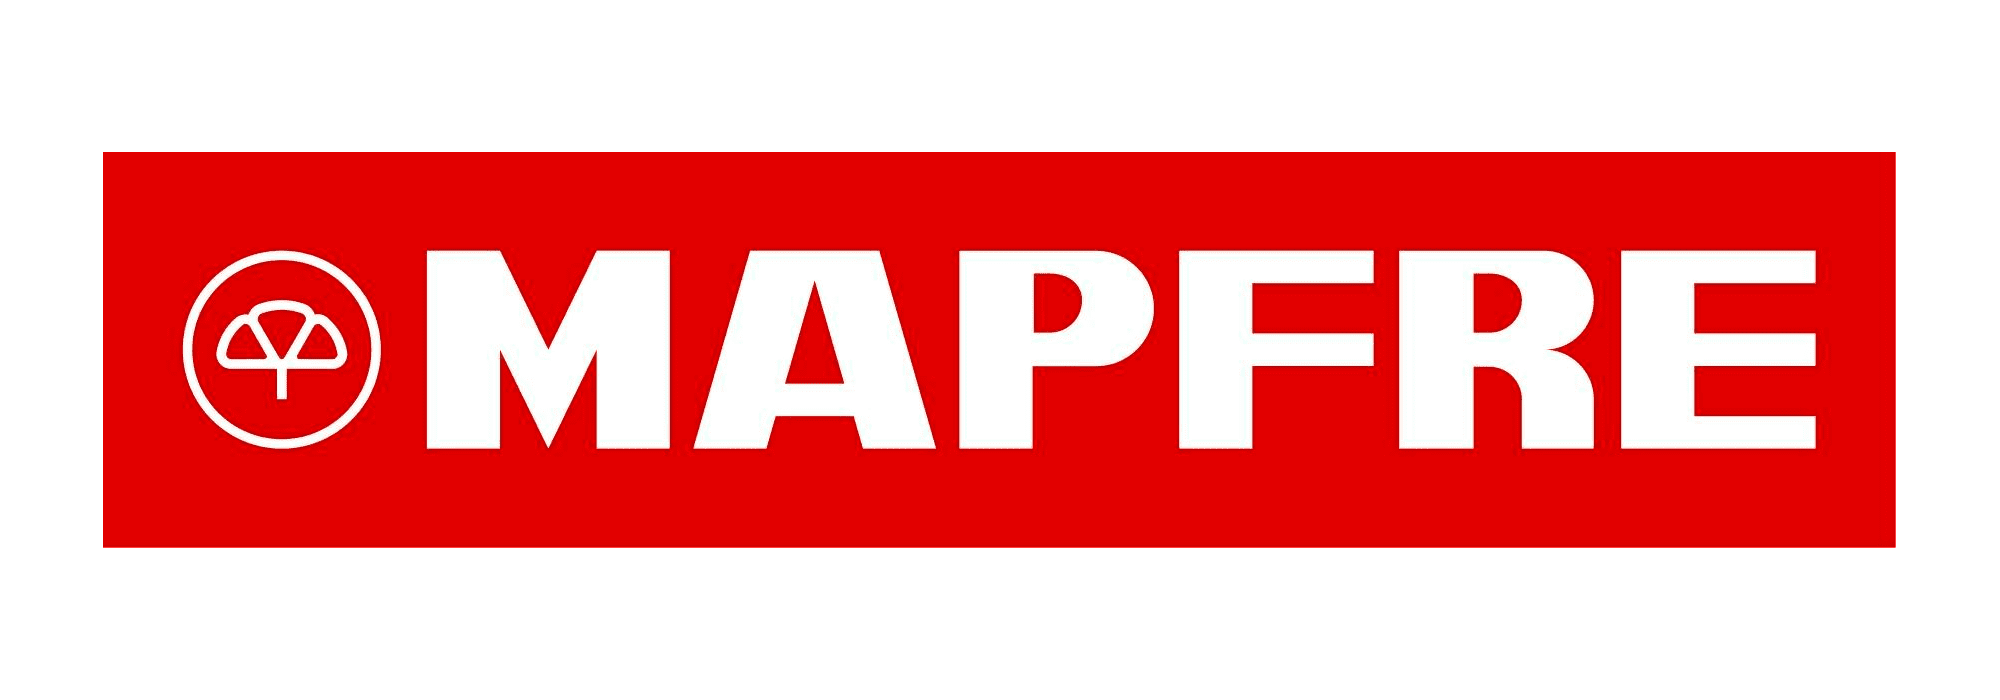 Mapfre-insurance-logo.png